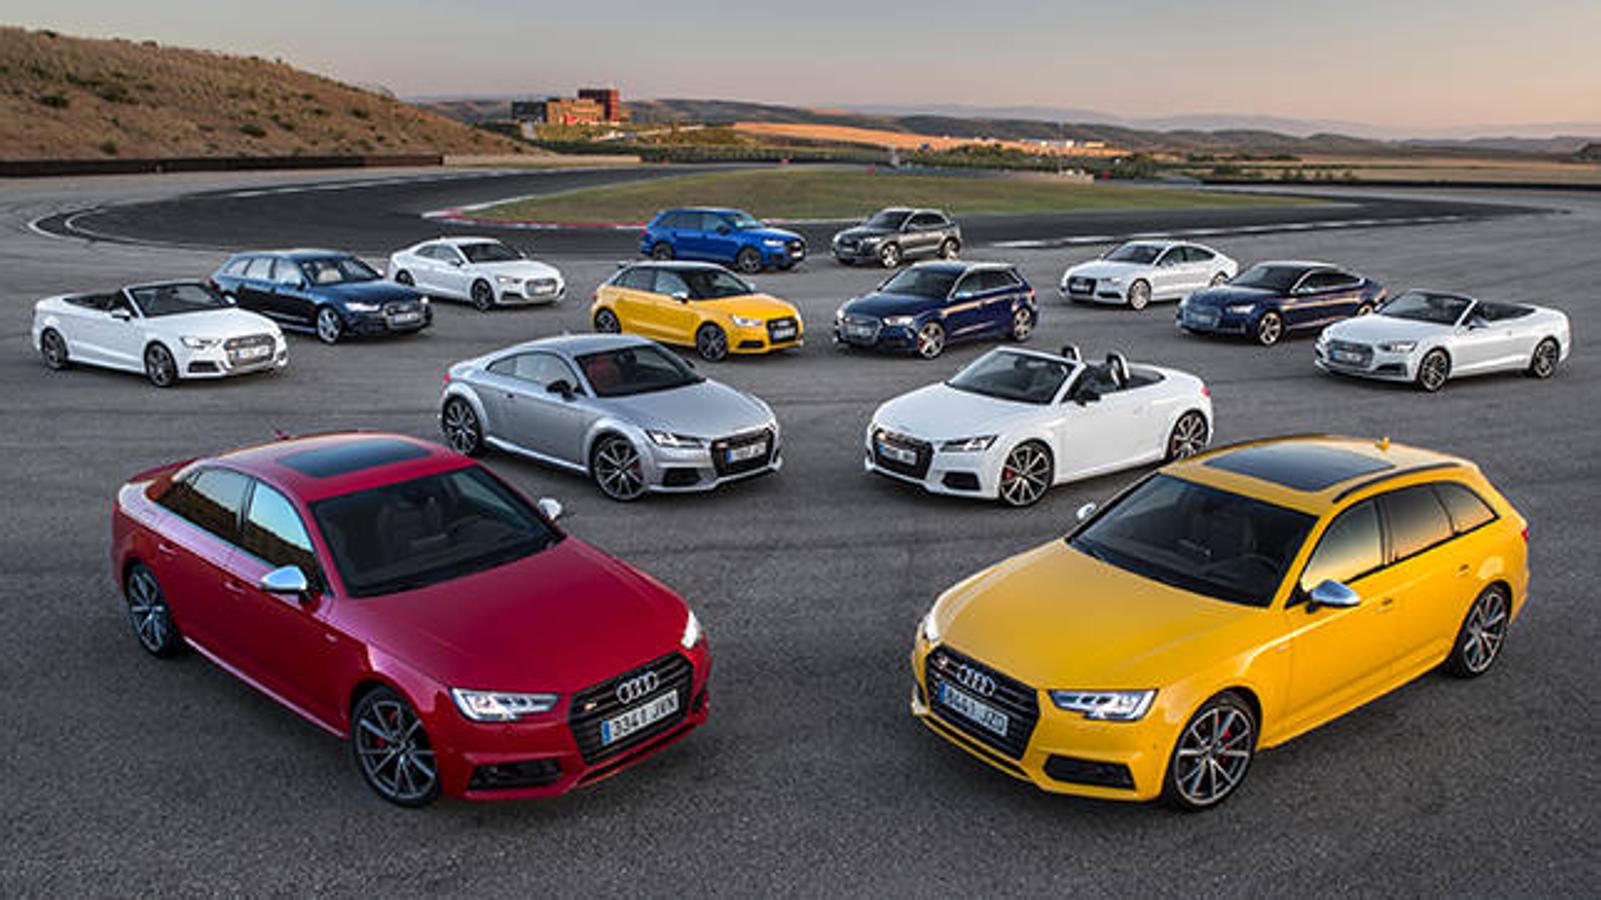 La gama S de Audi aúna lujo y deportividad a partes iguales